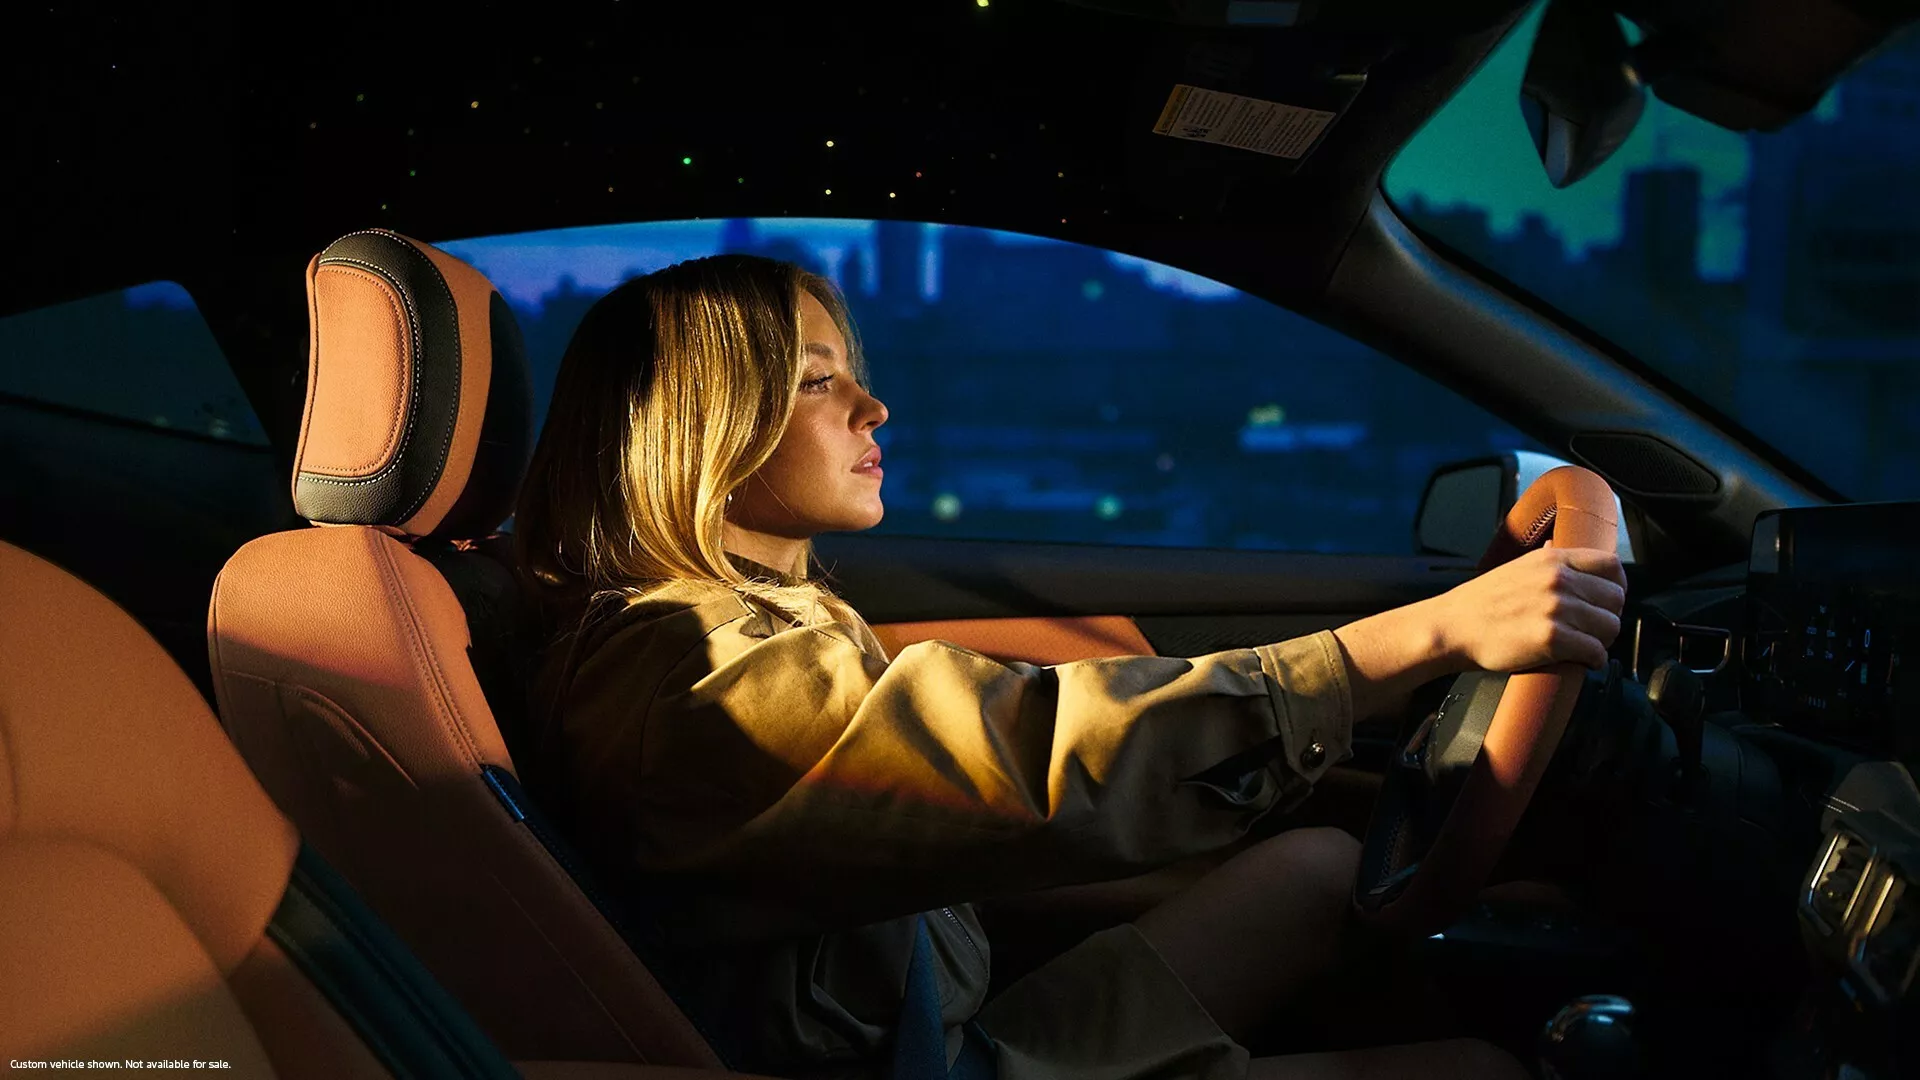 Ford показал эксклюзивный Mustang от голливудской актрисы Сидни Суини